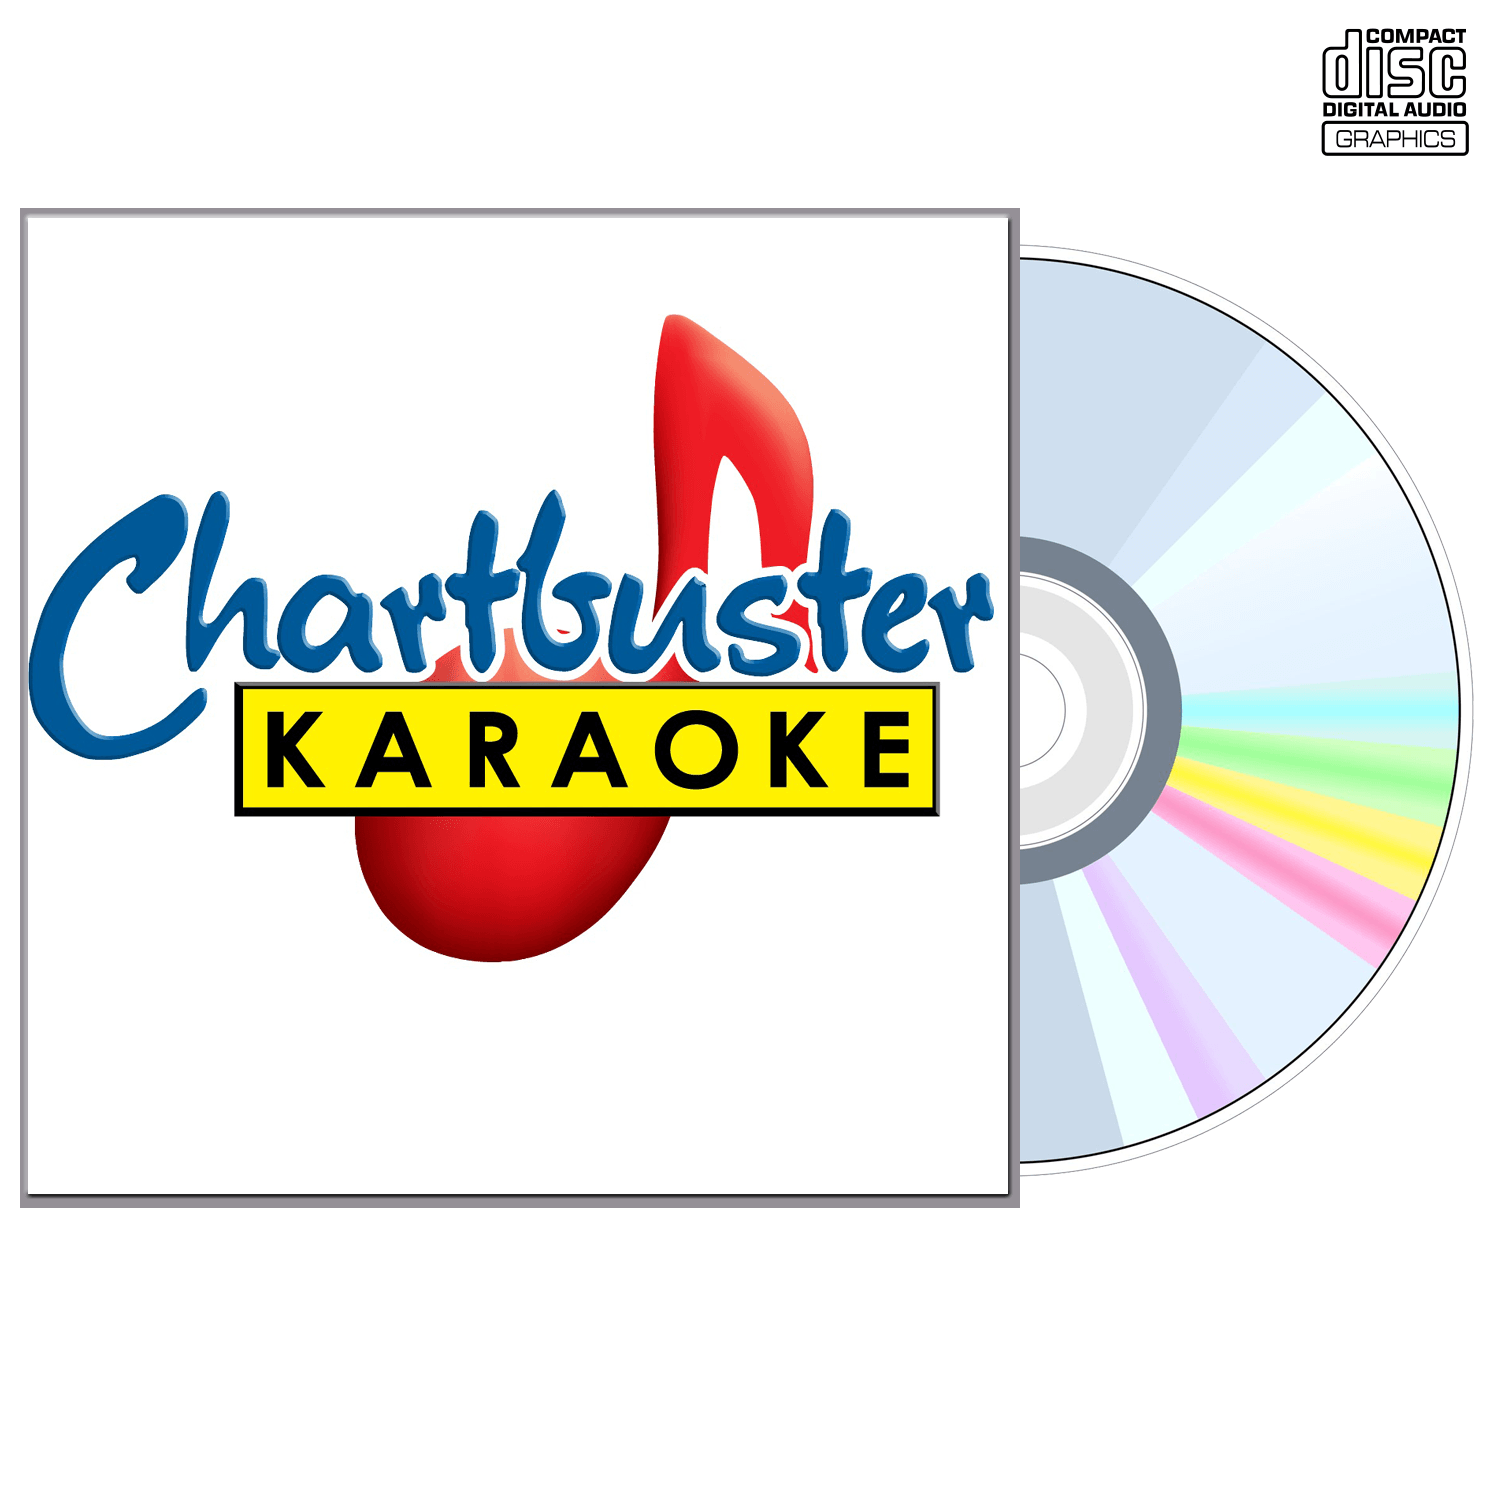 Coldplay - CD+G - Chartbuster Karaoke - Karaoke Home Entertainment